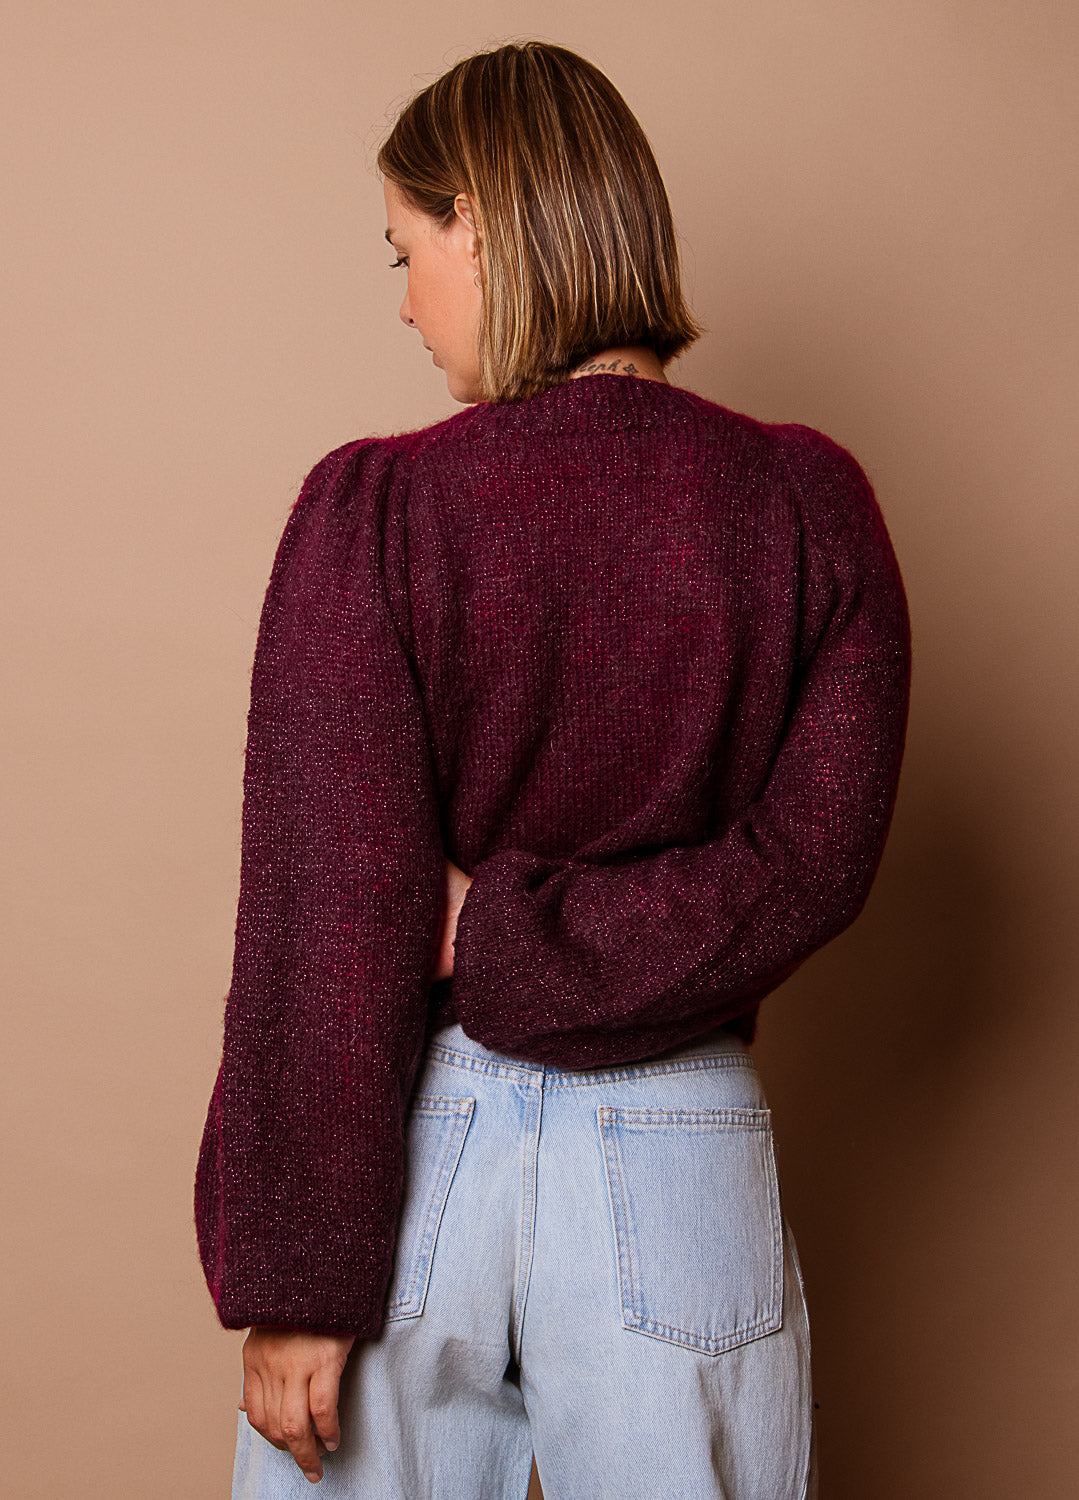 Tinsel Sweater Kit